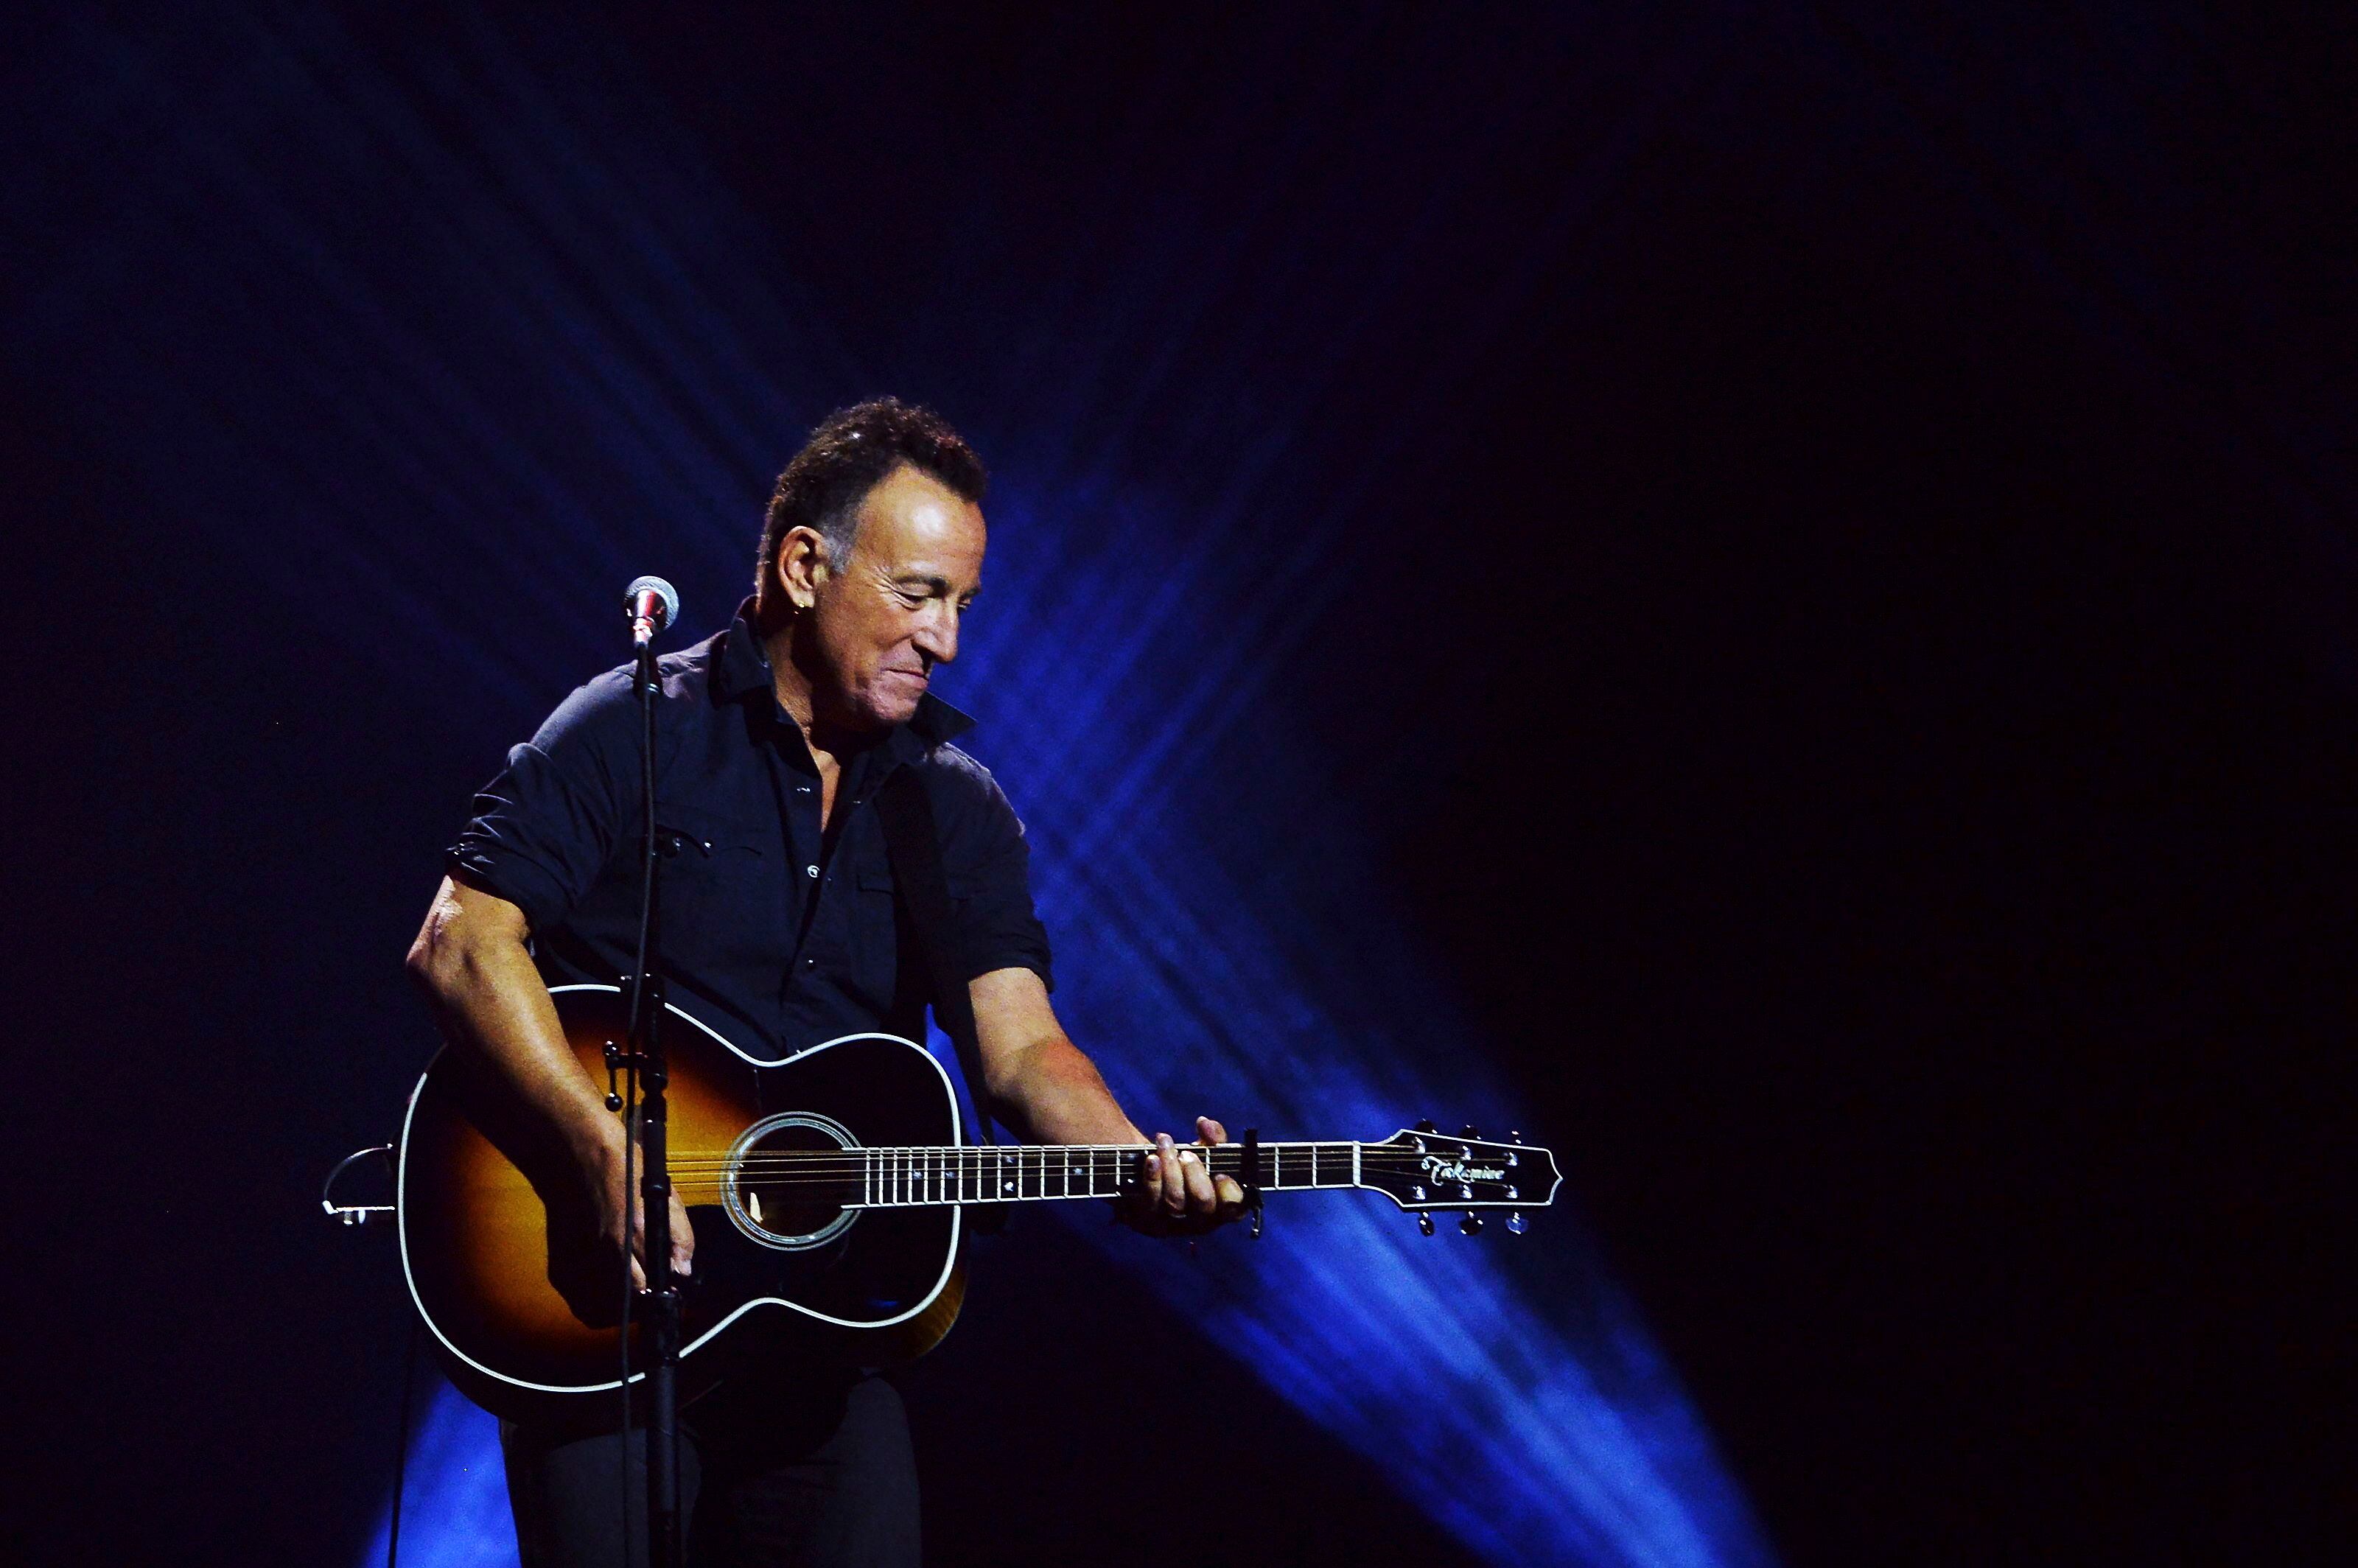 Bruce Springsteen toca en la ceremonia de clausura de los Juegos Invictus en Toronto, el 30 de septiembre de 2017. El más reciente álbum de Springsteen, "Letter To You", salió el 23 de octubre del 2020. (Nathan Denette/The Canadian Press vía AP, archivo)